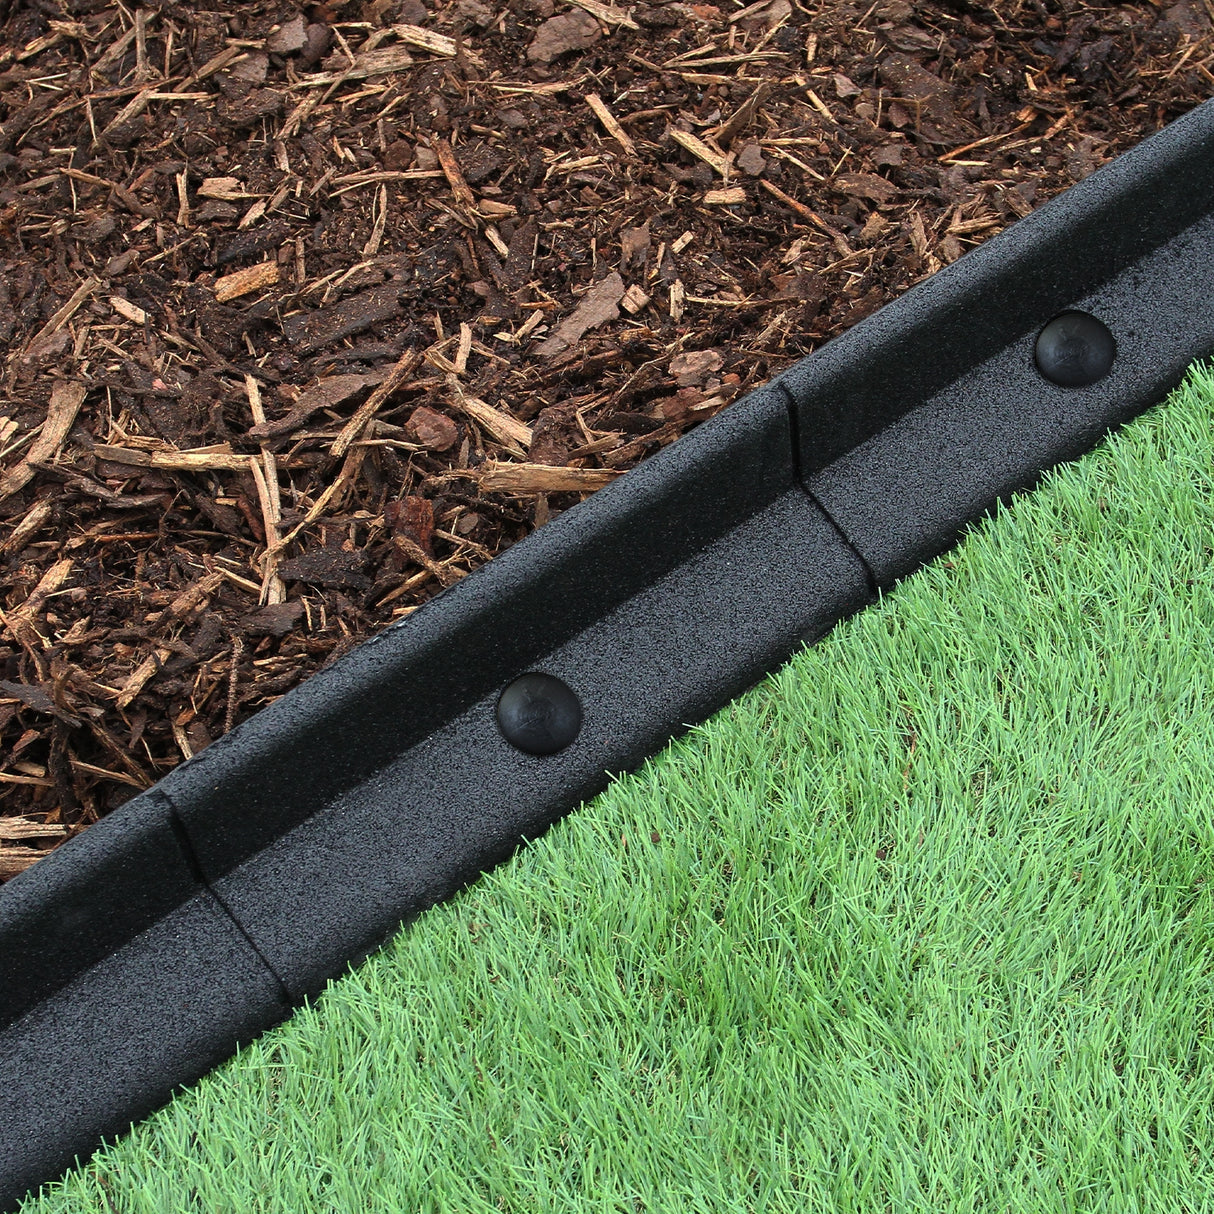 Flexible Lawn Edging Black 1.2m x 46